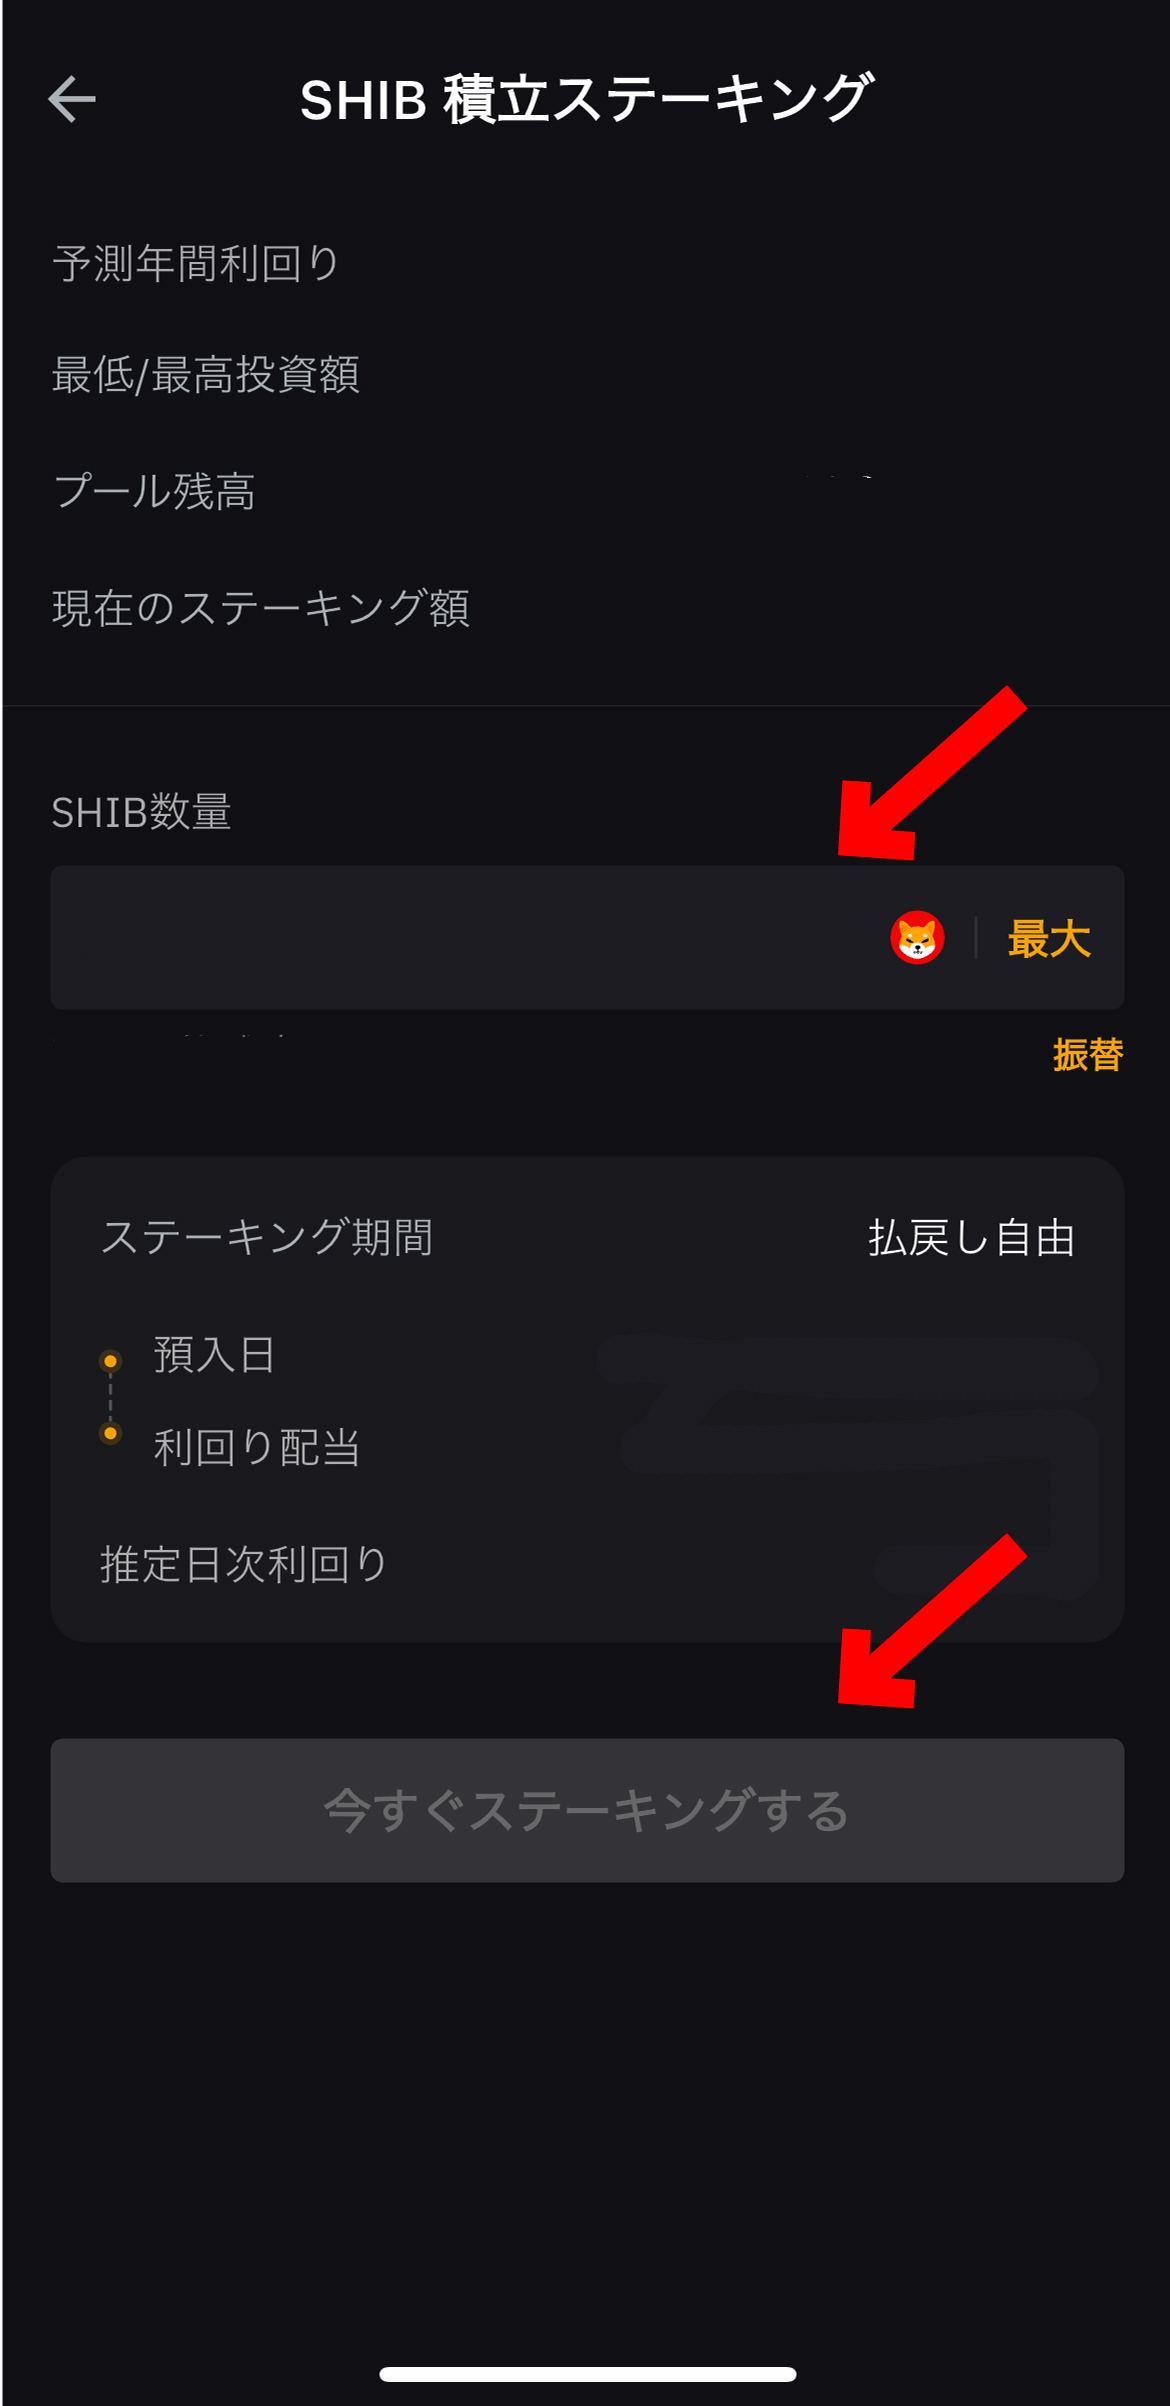 柴犬コインのステーキング方法【Bybit】【バイビット】【シバイヌ】【仮想通貨】 【SHIB/Shiba Inu】今すぐステーキングするを選択します